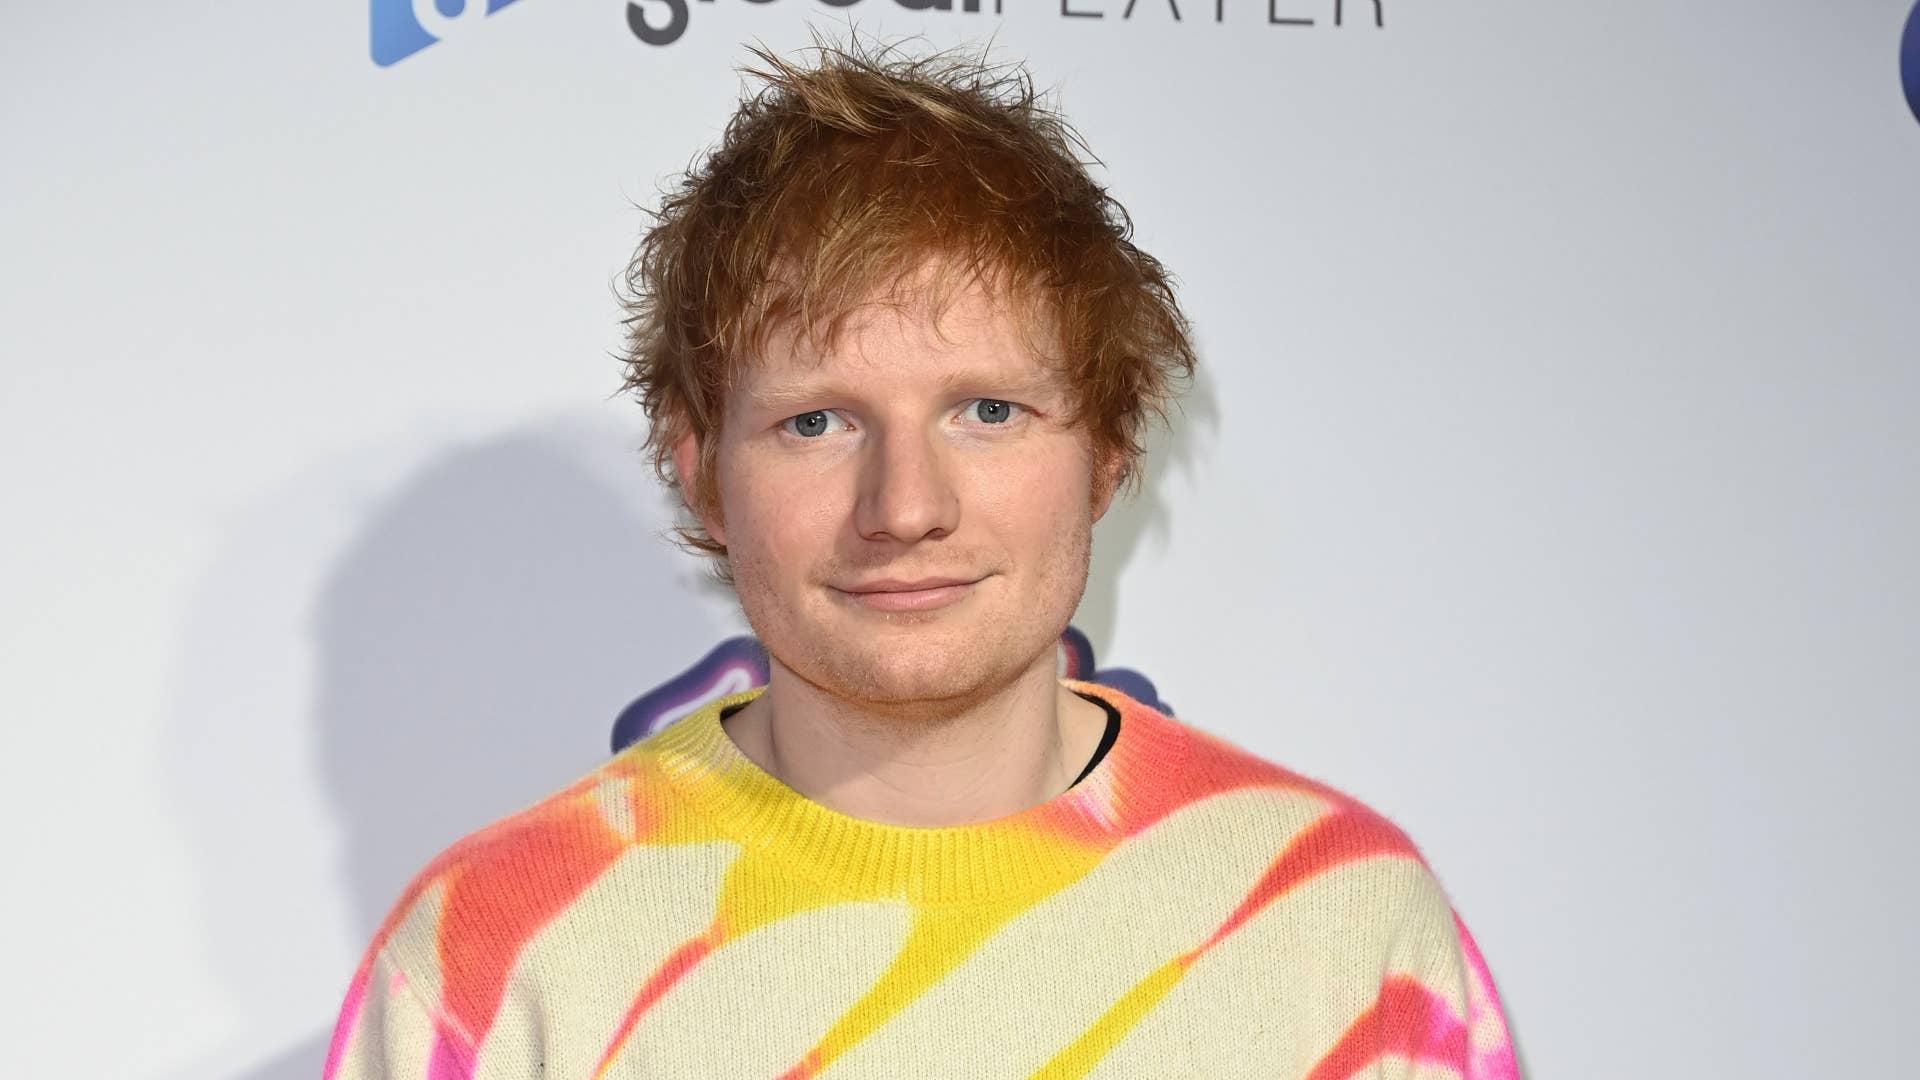 Ed Sheeran poses for snaps at Capital Jingle Bell Ball.